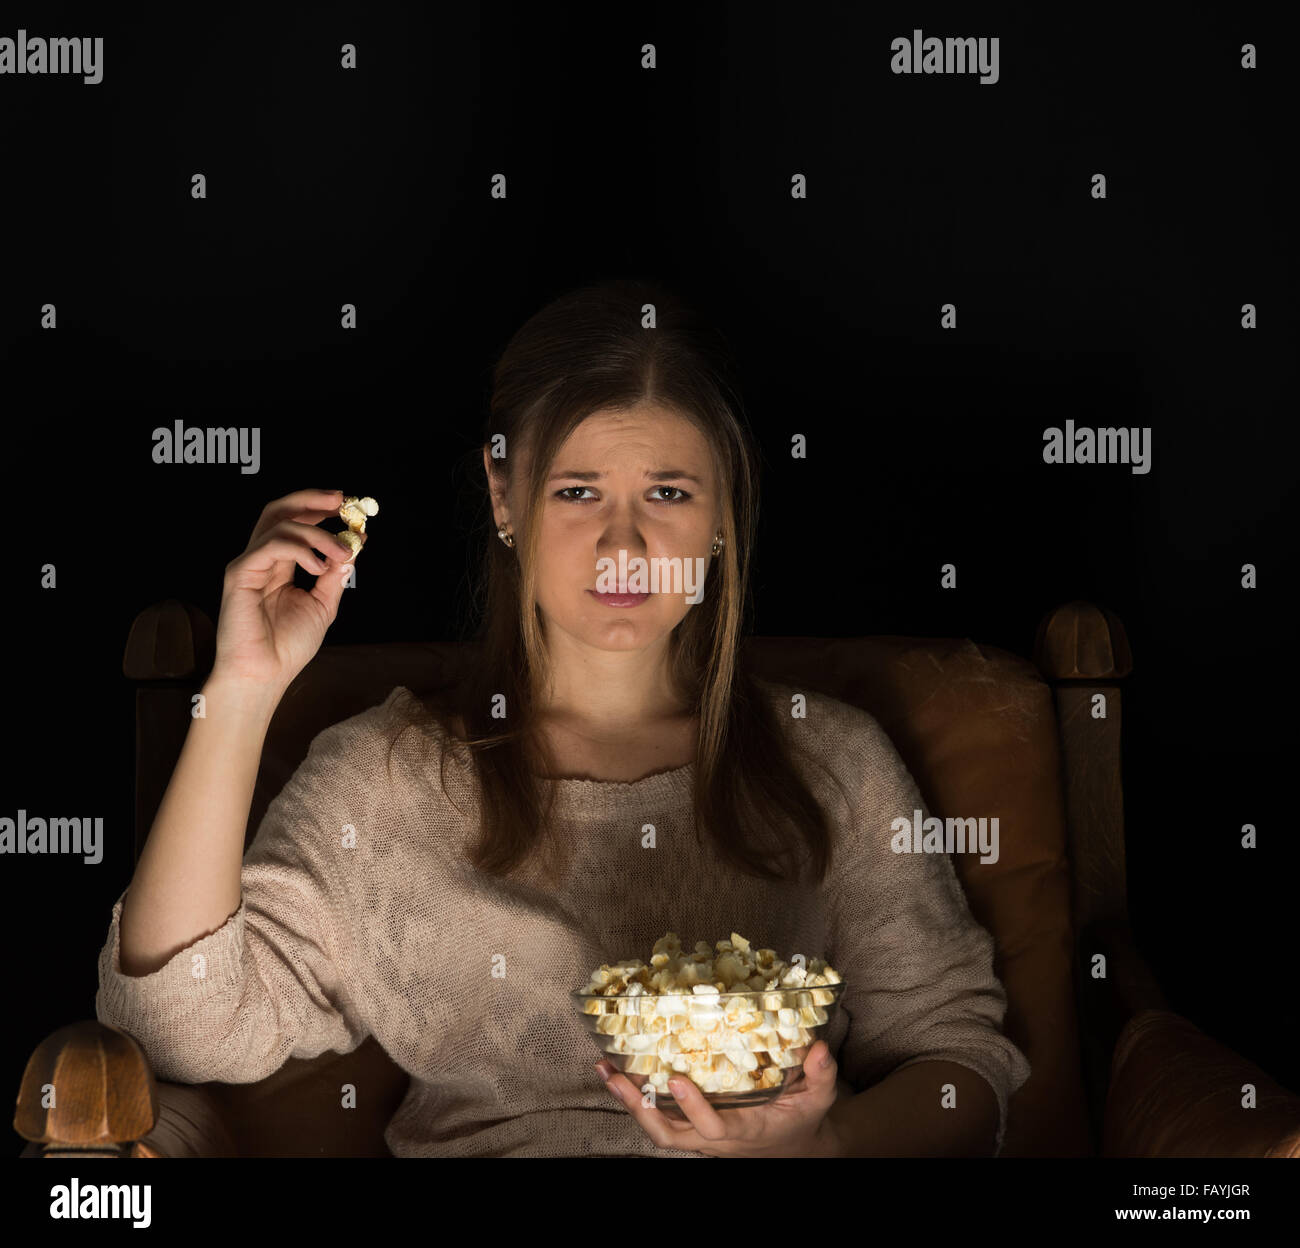 Giovane donna seduta nella stanza scura nella parte anteriore della tv guardare film e mangiare popcorn, mostrare le emozioni. Foto Stock